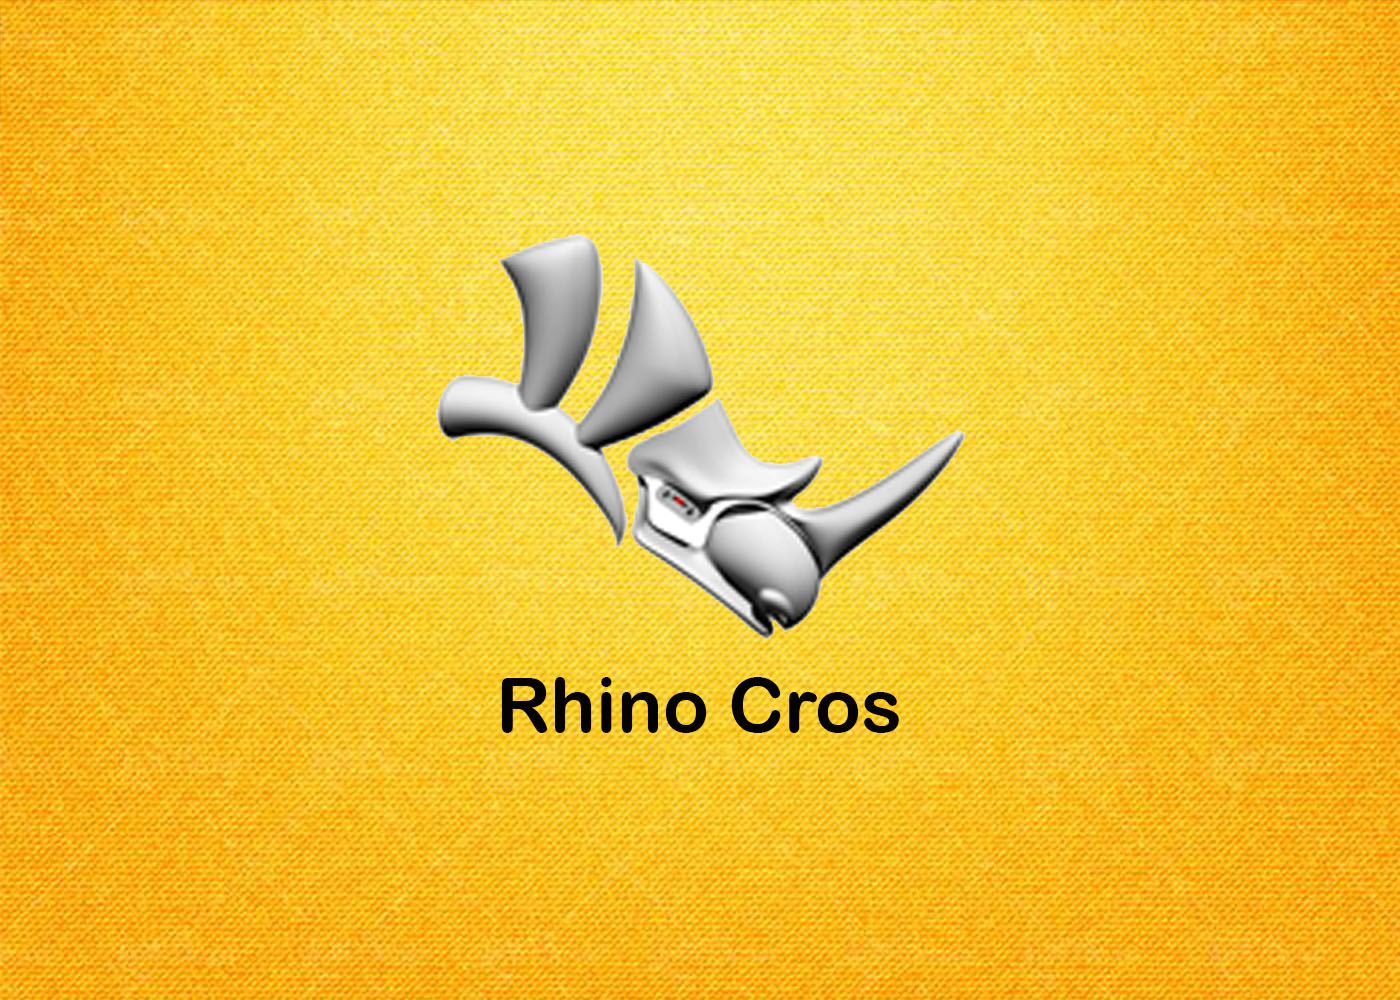 Rhino Cros